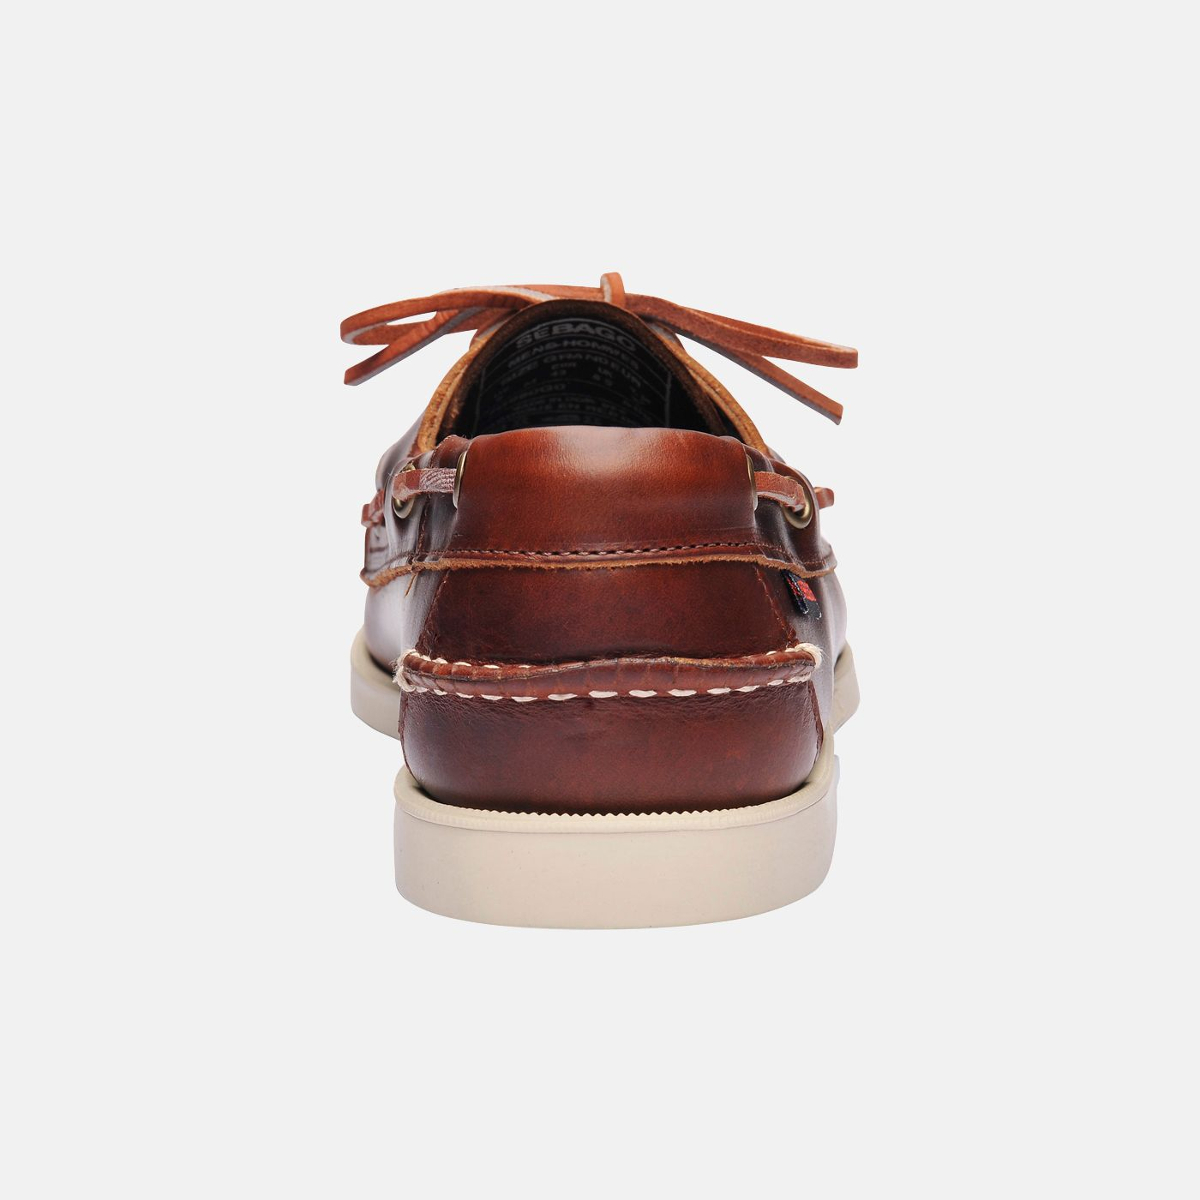 Sebago Docksides bootschoen heren brown oiled waxy leather, maat EU 46 (US 11,5)